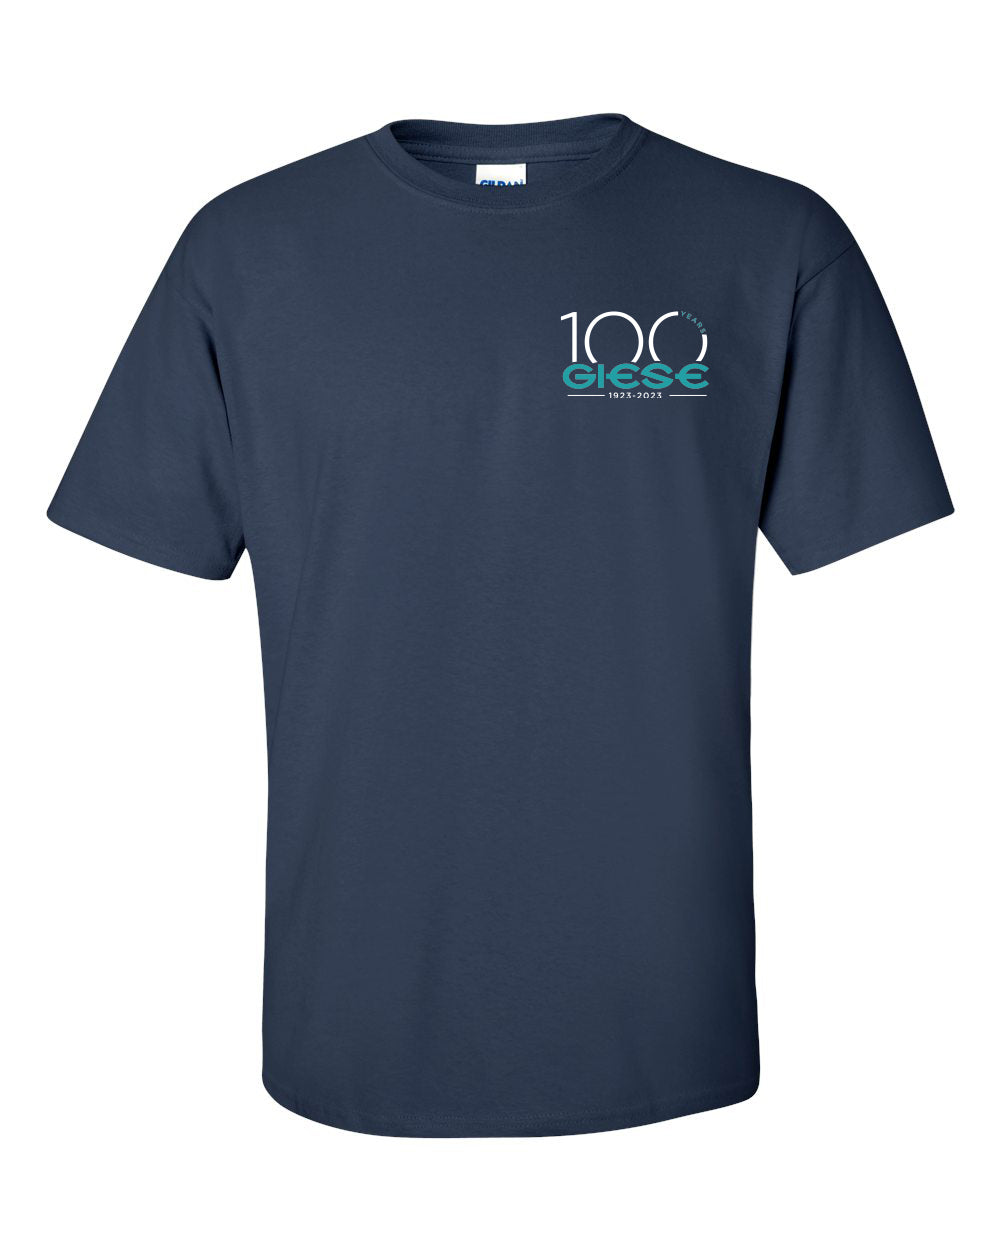 2000 - GIESE - Gildan Ultra Cotton® T Shirt